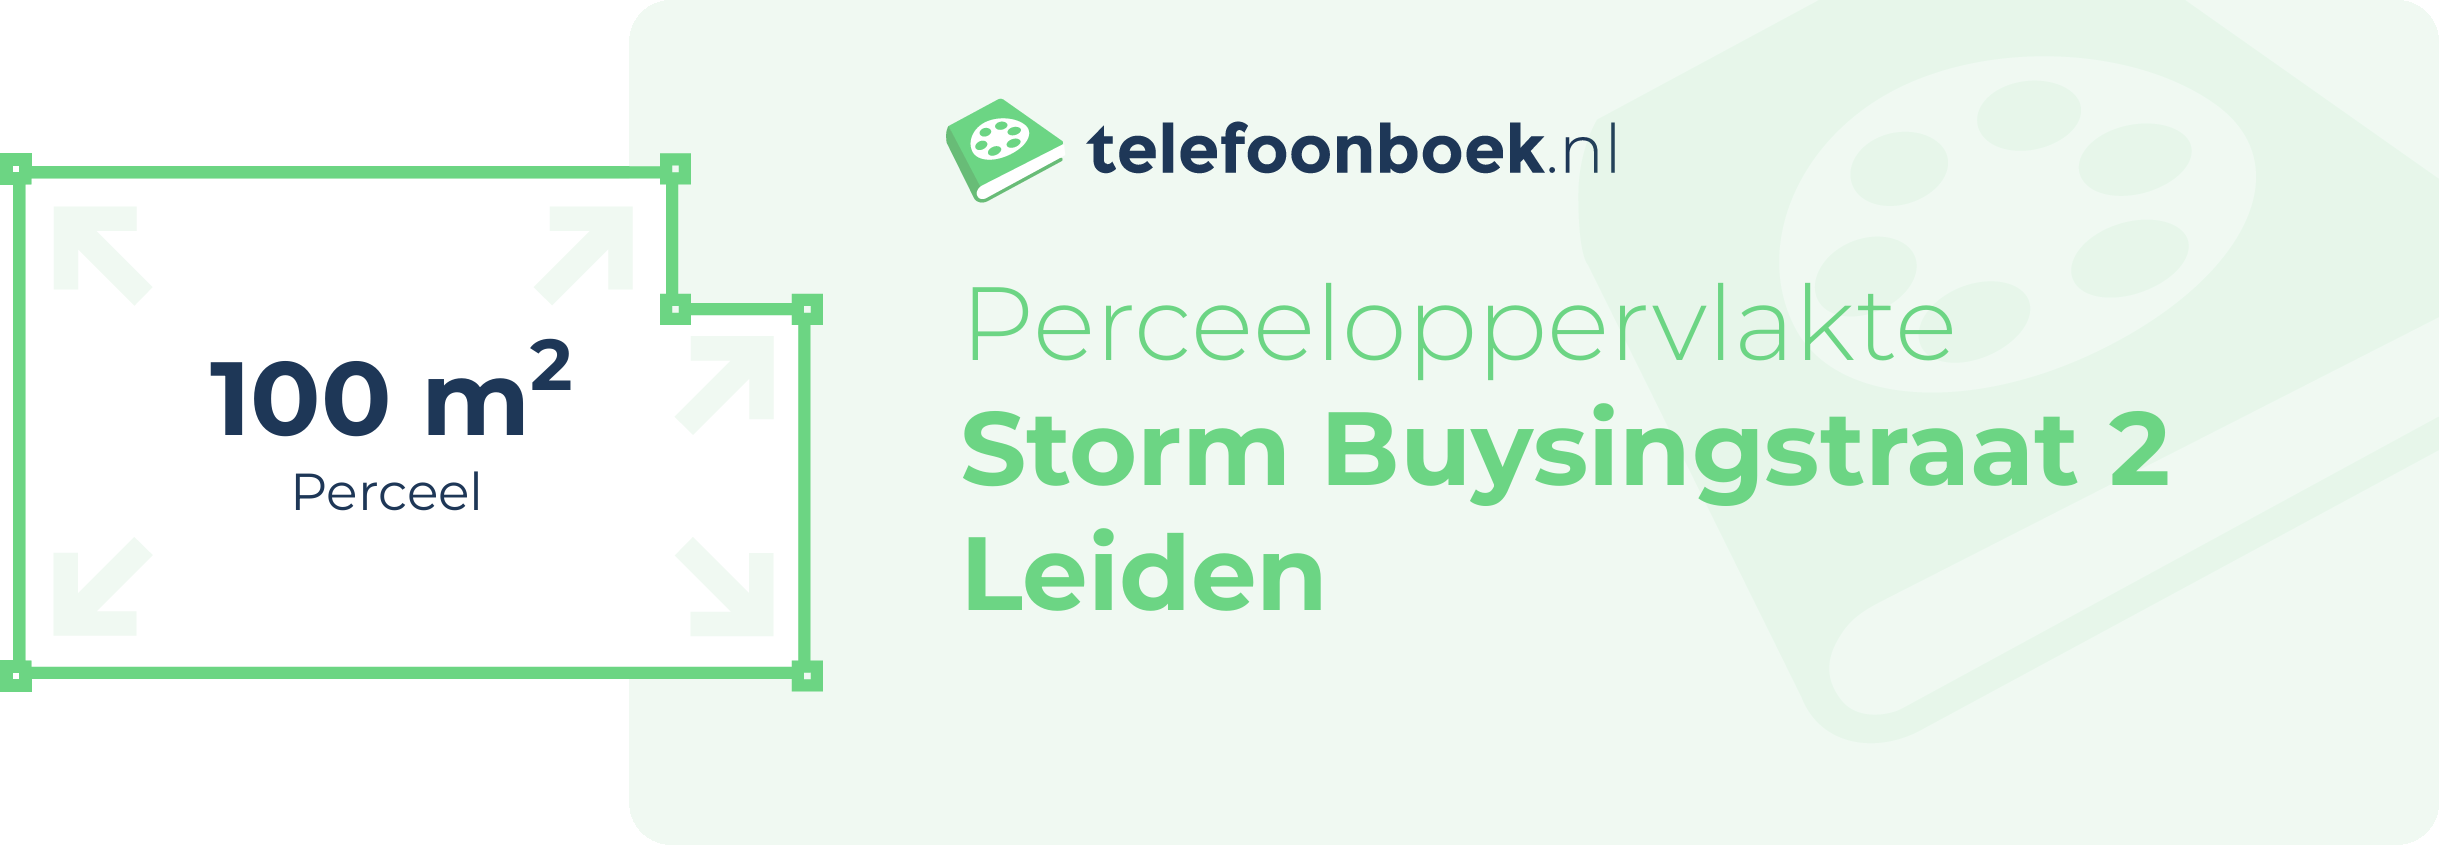 Perceeloppervlakte Storm Buysingstraat 2 Leiden